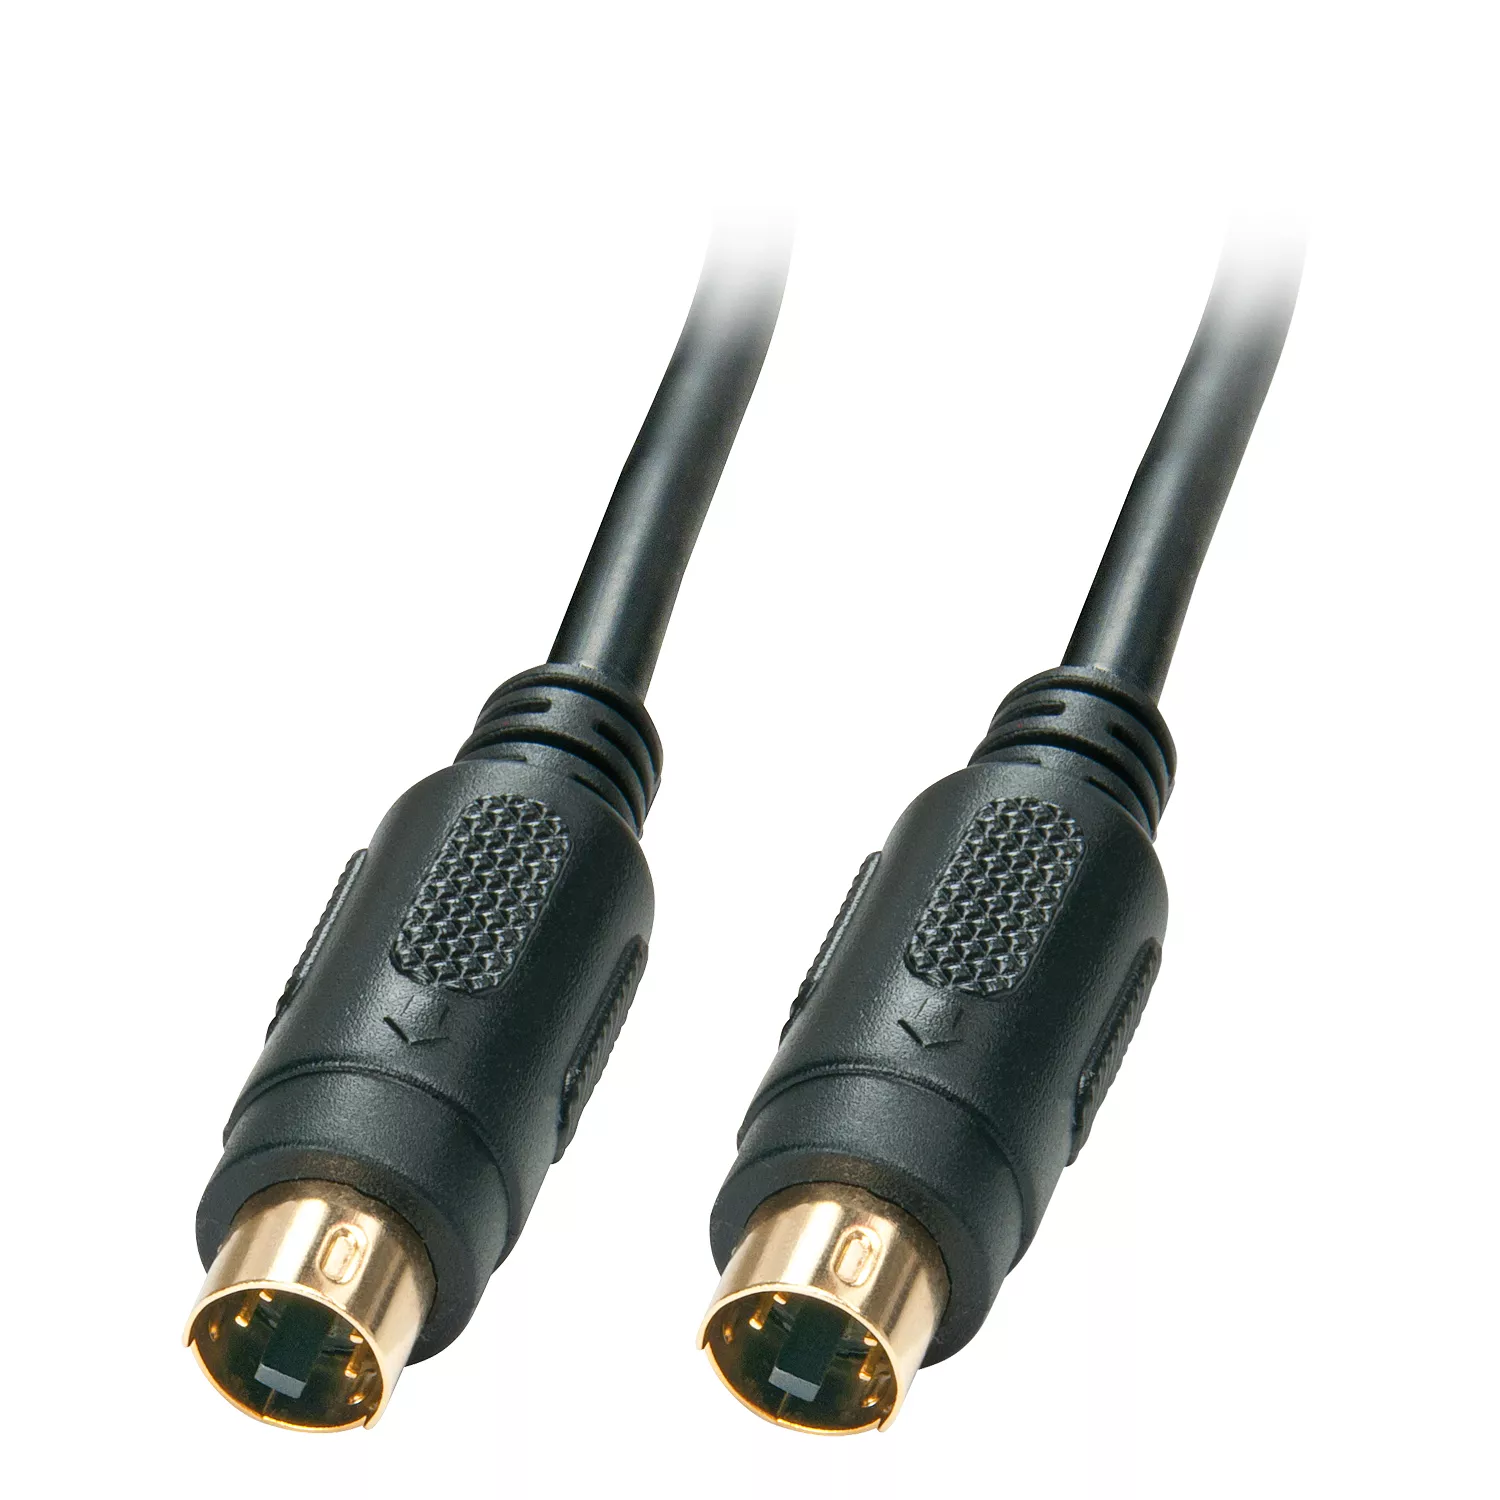 Vente Câble Audio LINDY S-VHS-Cable s-VHS Mini-DIN male/male 2m Gold sur hello RSE